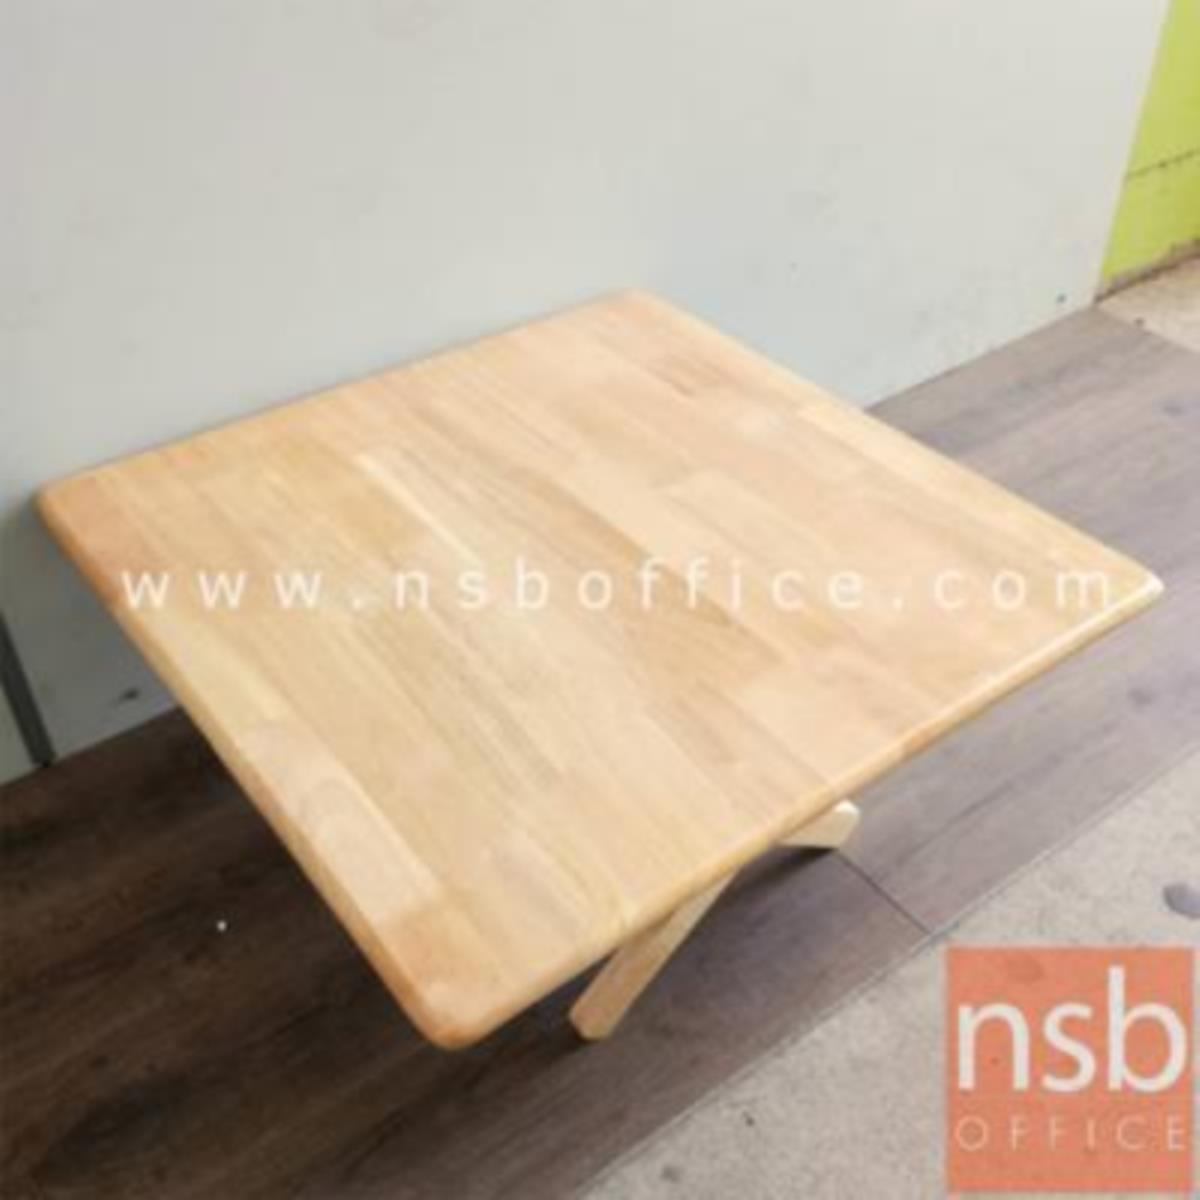 A14A193:โต๊ะพับหน้าไม้ยางพารา รุ่น Pansy (แพนซี) ขนาด 60W ,75W cm.  สีธรรมชาติ